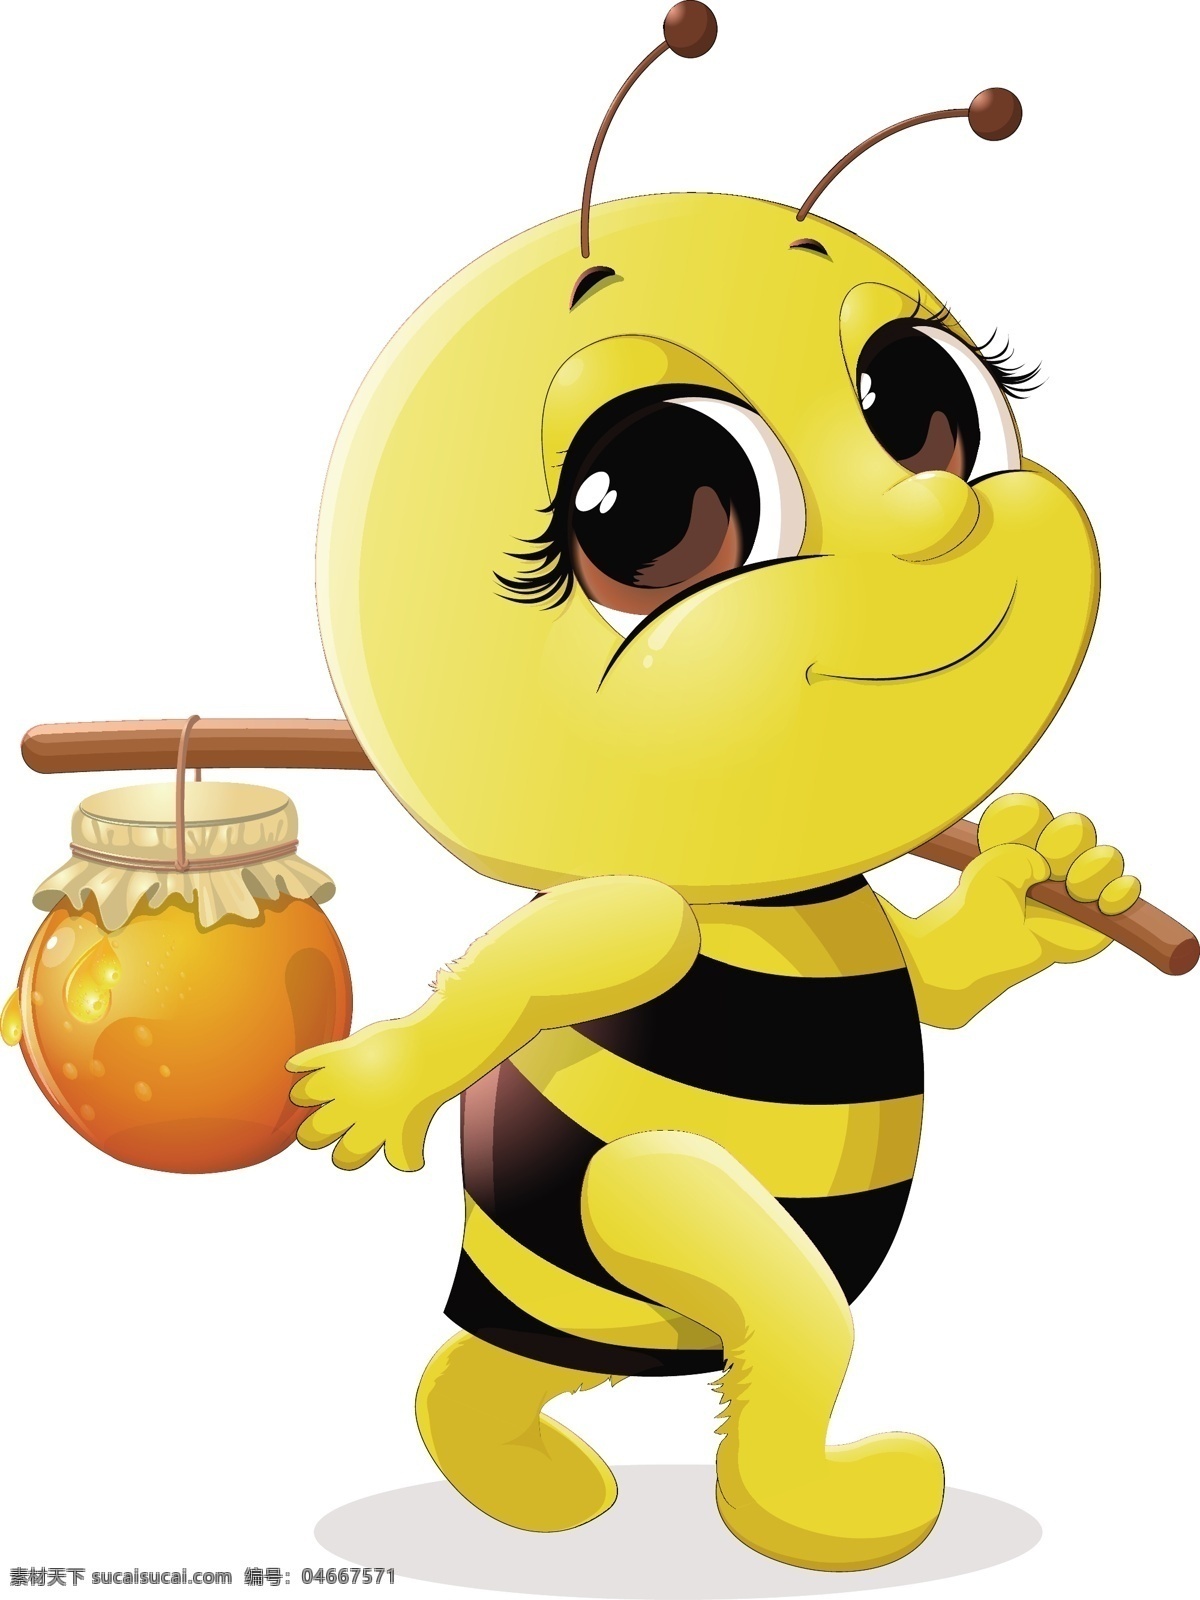 蜜蜂采蜂蜜 蜜蜂采蜜 小蜜蜂采蜜 工蜂采蜜 采蜜 辛勤采蜜 蜜蜂辛勤采蜜 采蜜的蜜蜂 小蜜蜂 蜜蜂 蜜蜂传播花粉 传播花粉 花粉传播 蜂蜜 蜂蜜海报 蜂蜜展板 蜂蜜广告 野生 蜂胶 天然蜂蜜 自然蜂蜜 蜂蜜宣单 蜂蜜画册 蜂蜜模板 蜂蜜包装 蜂蜜展架 野生蜂蜜 蜂蜜插画 蜂蜜卡通 蜂蜜文化 蜂蜜养殖 包装设计